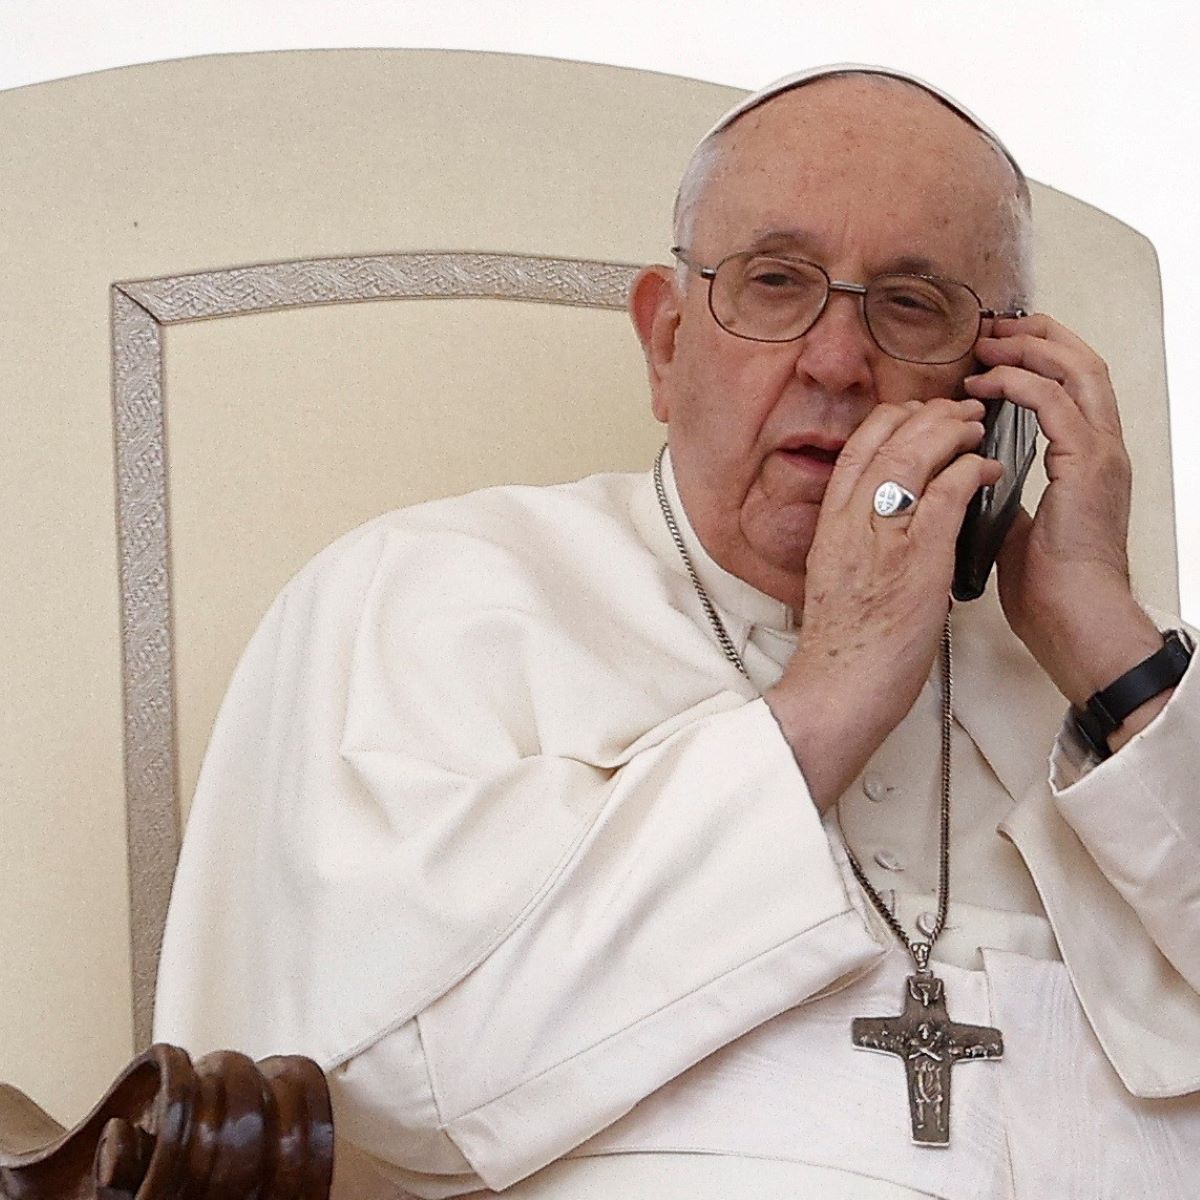 Não estou bem de saúde.” Papa Francisco interrompe audiência no